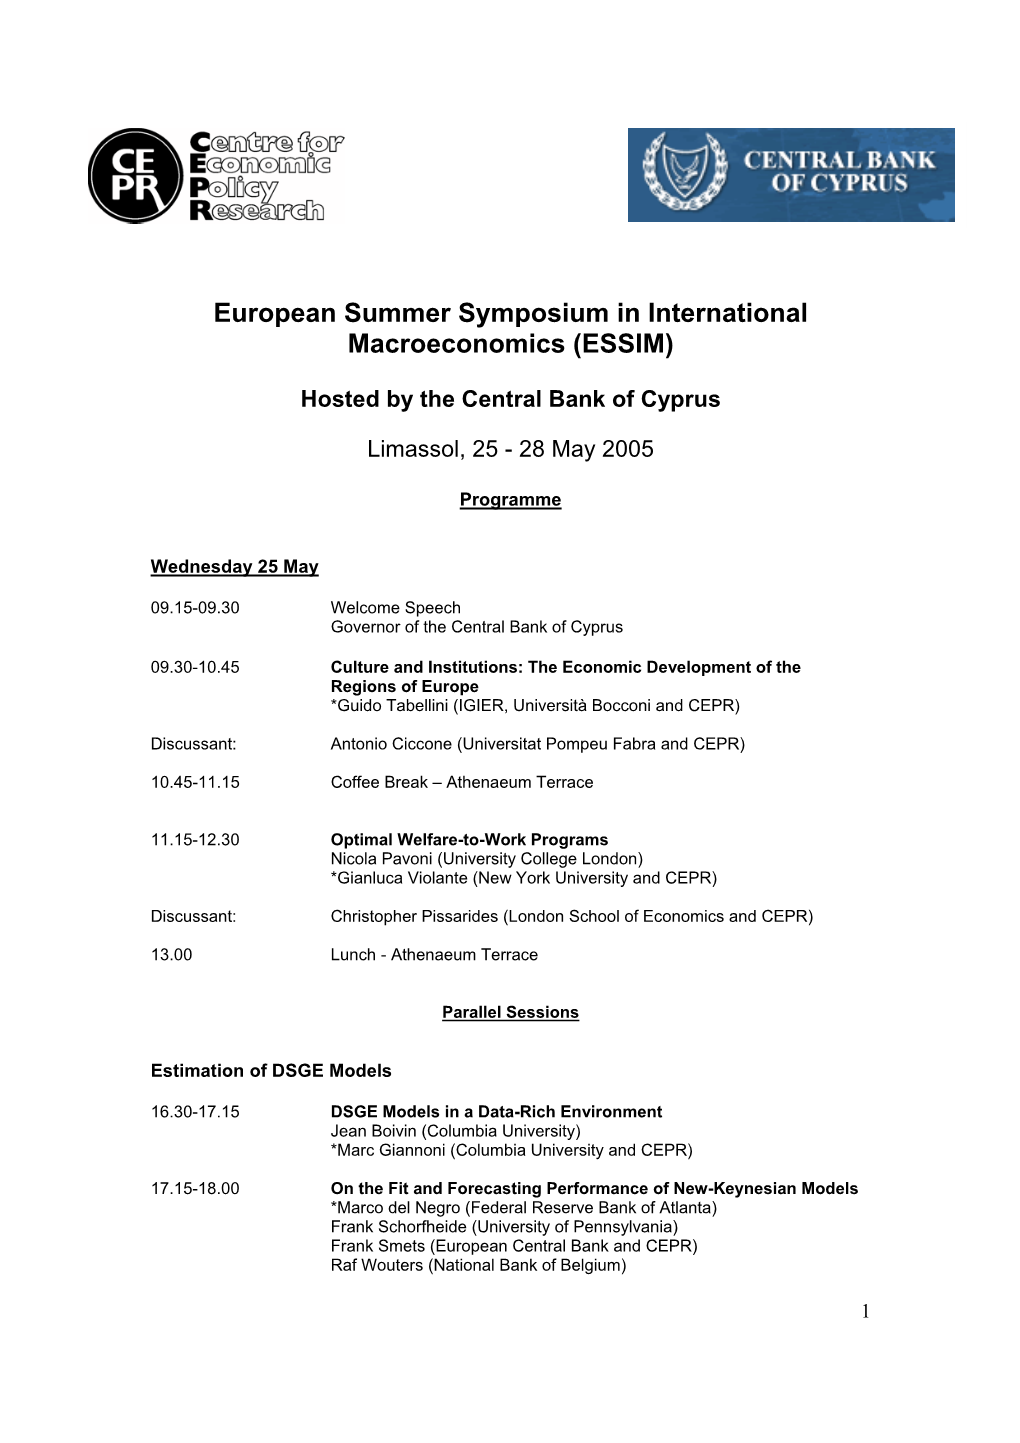 European Summer Symposium in International Macroeconomics (ESSIM)